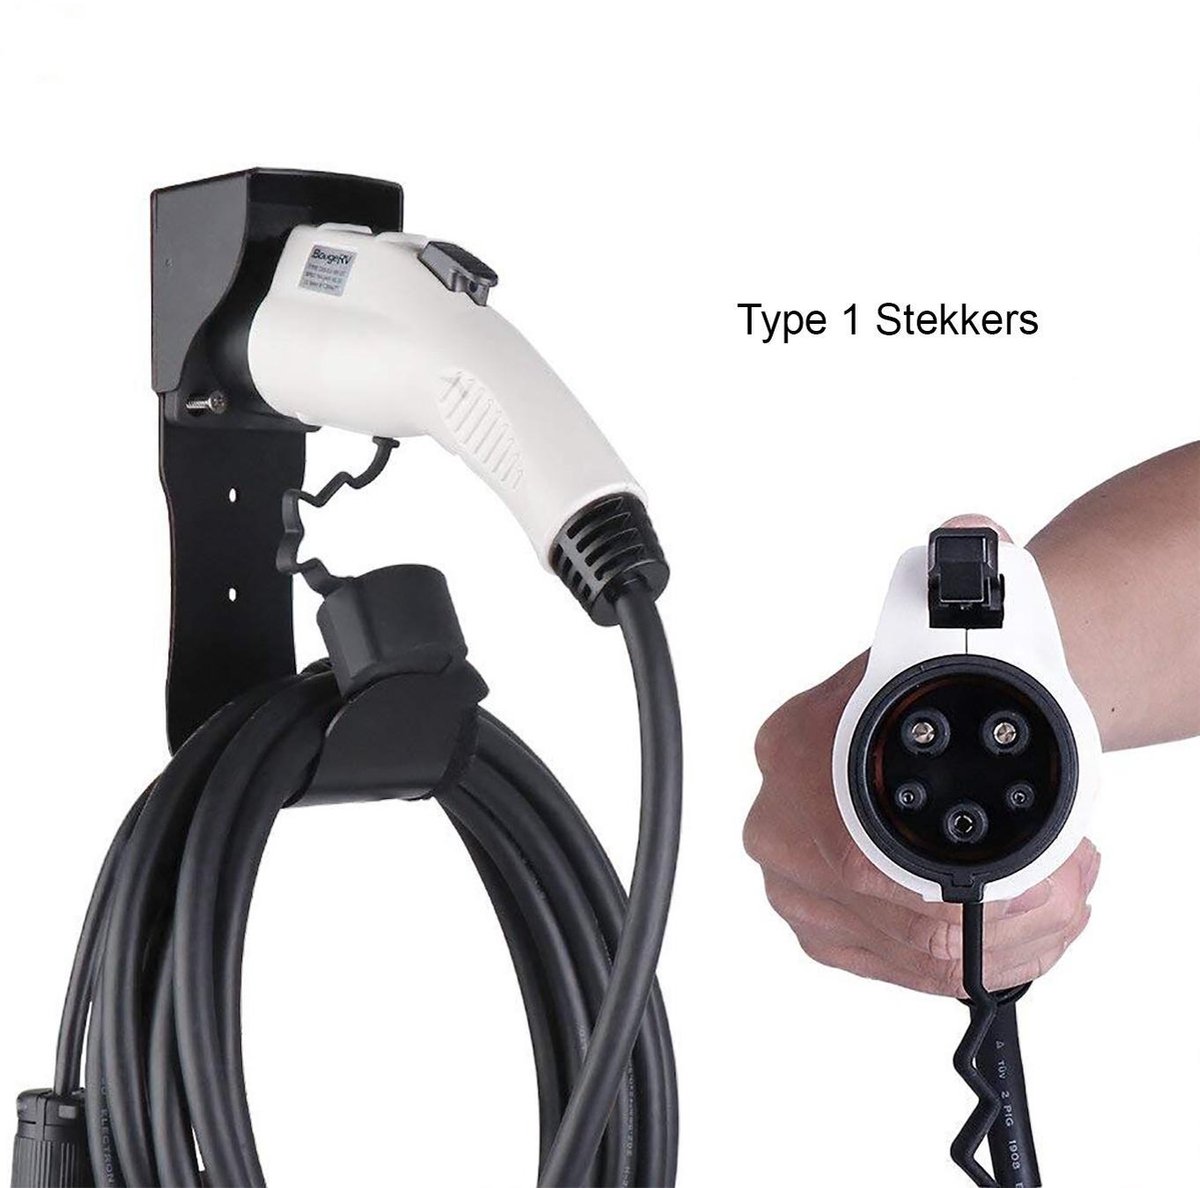 Crochet de suspension pour câble de charge voiture électrique noir